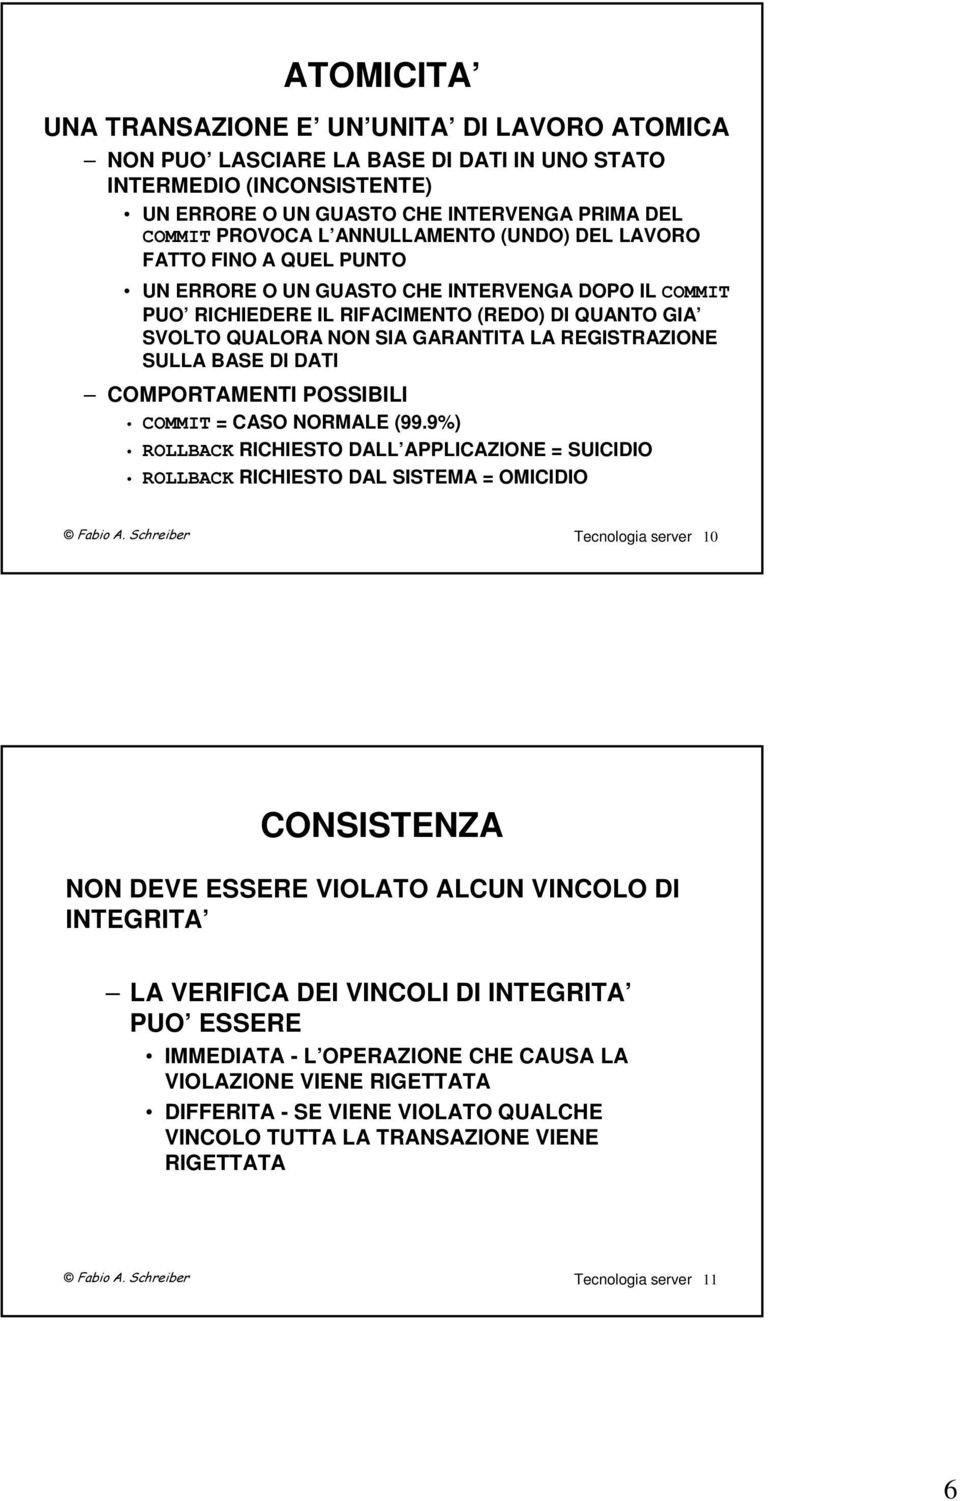 REGISTRAZIONE SULLA BASE DI DATI COMPORTAMENTI POSSIBILI COMMIT = CASO NORMALE (99.